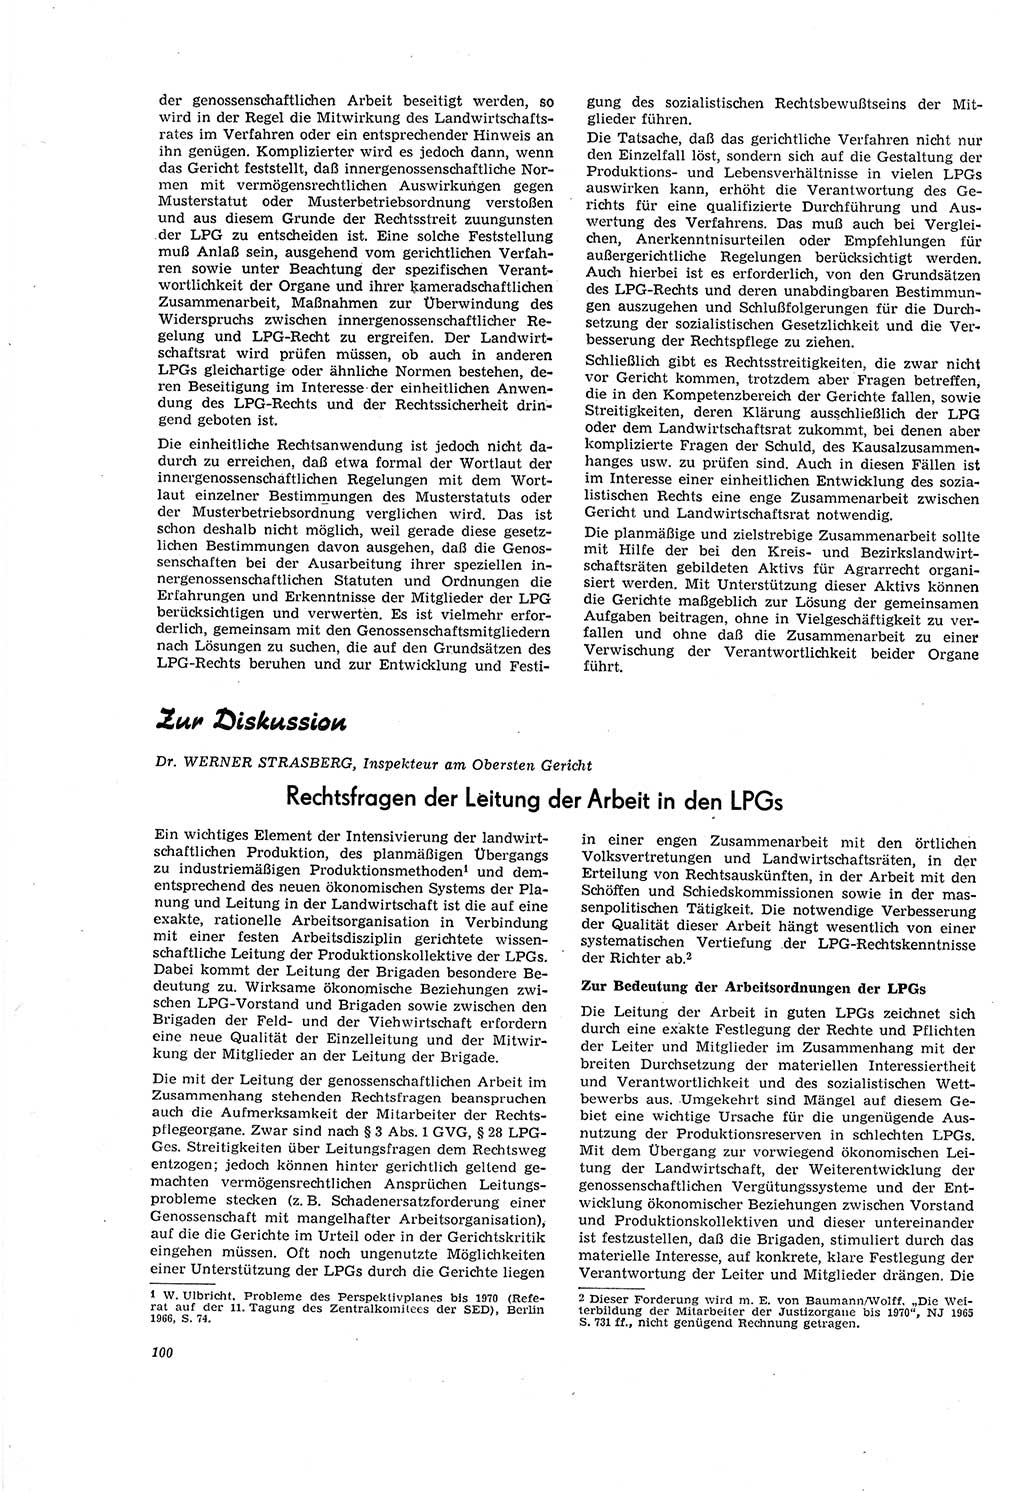 Neue Justiz (NJ), Zeitschrift für Recht und Rechtswissenschaft [Deutsche Demokratische Republik (DDR)], 20. Jahrgang 1966, Seite 100 (NJ DDR 1966, S. 100)